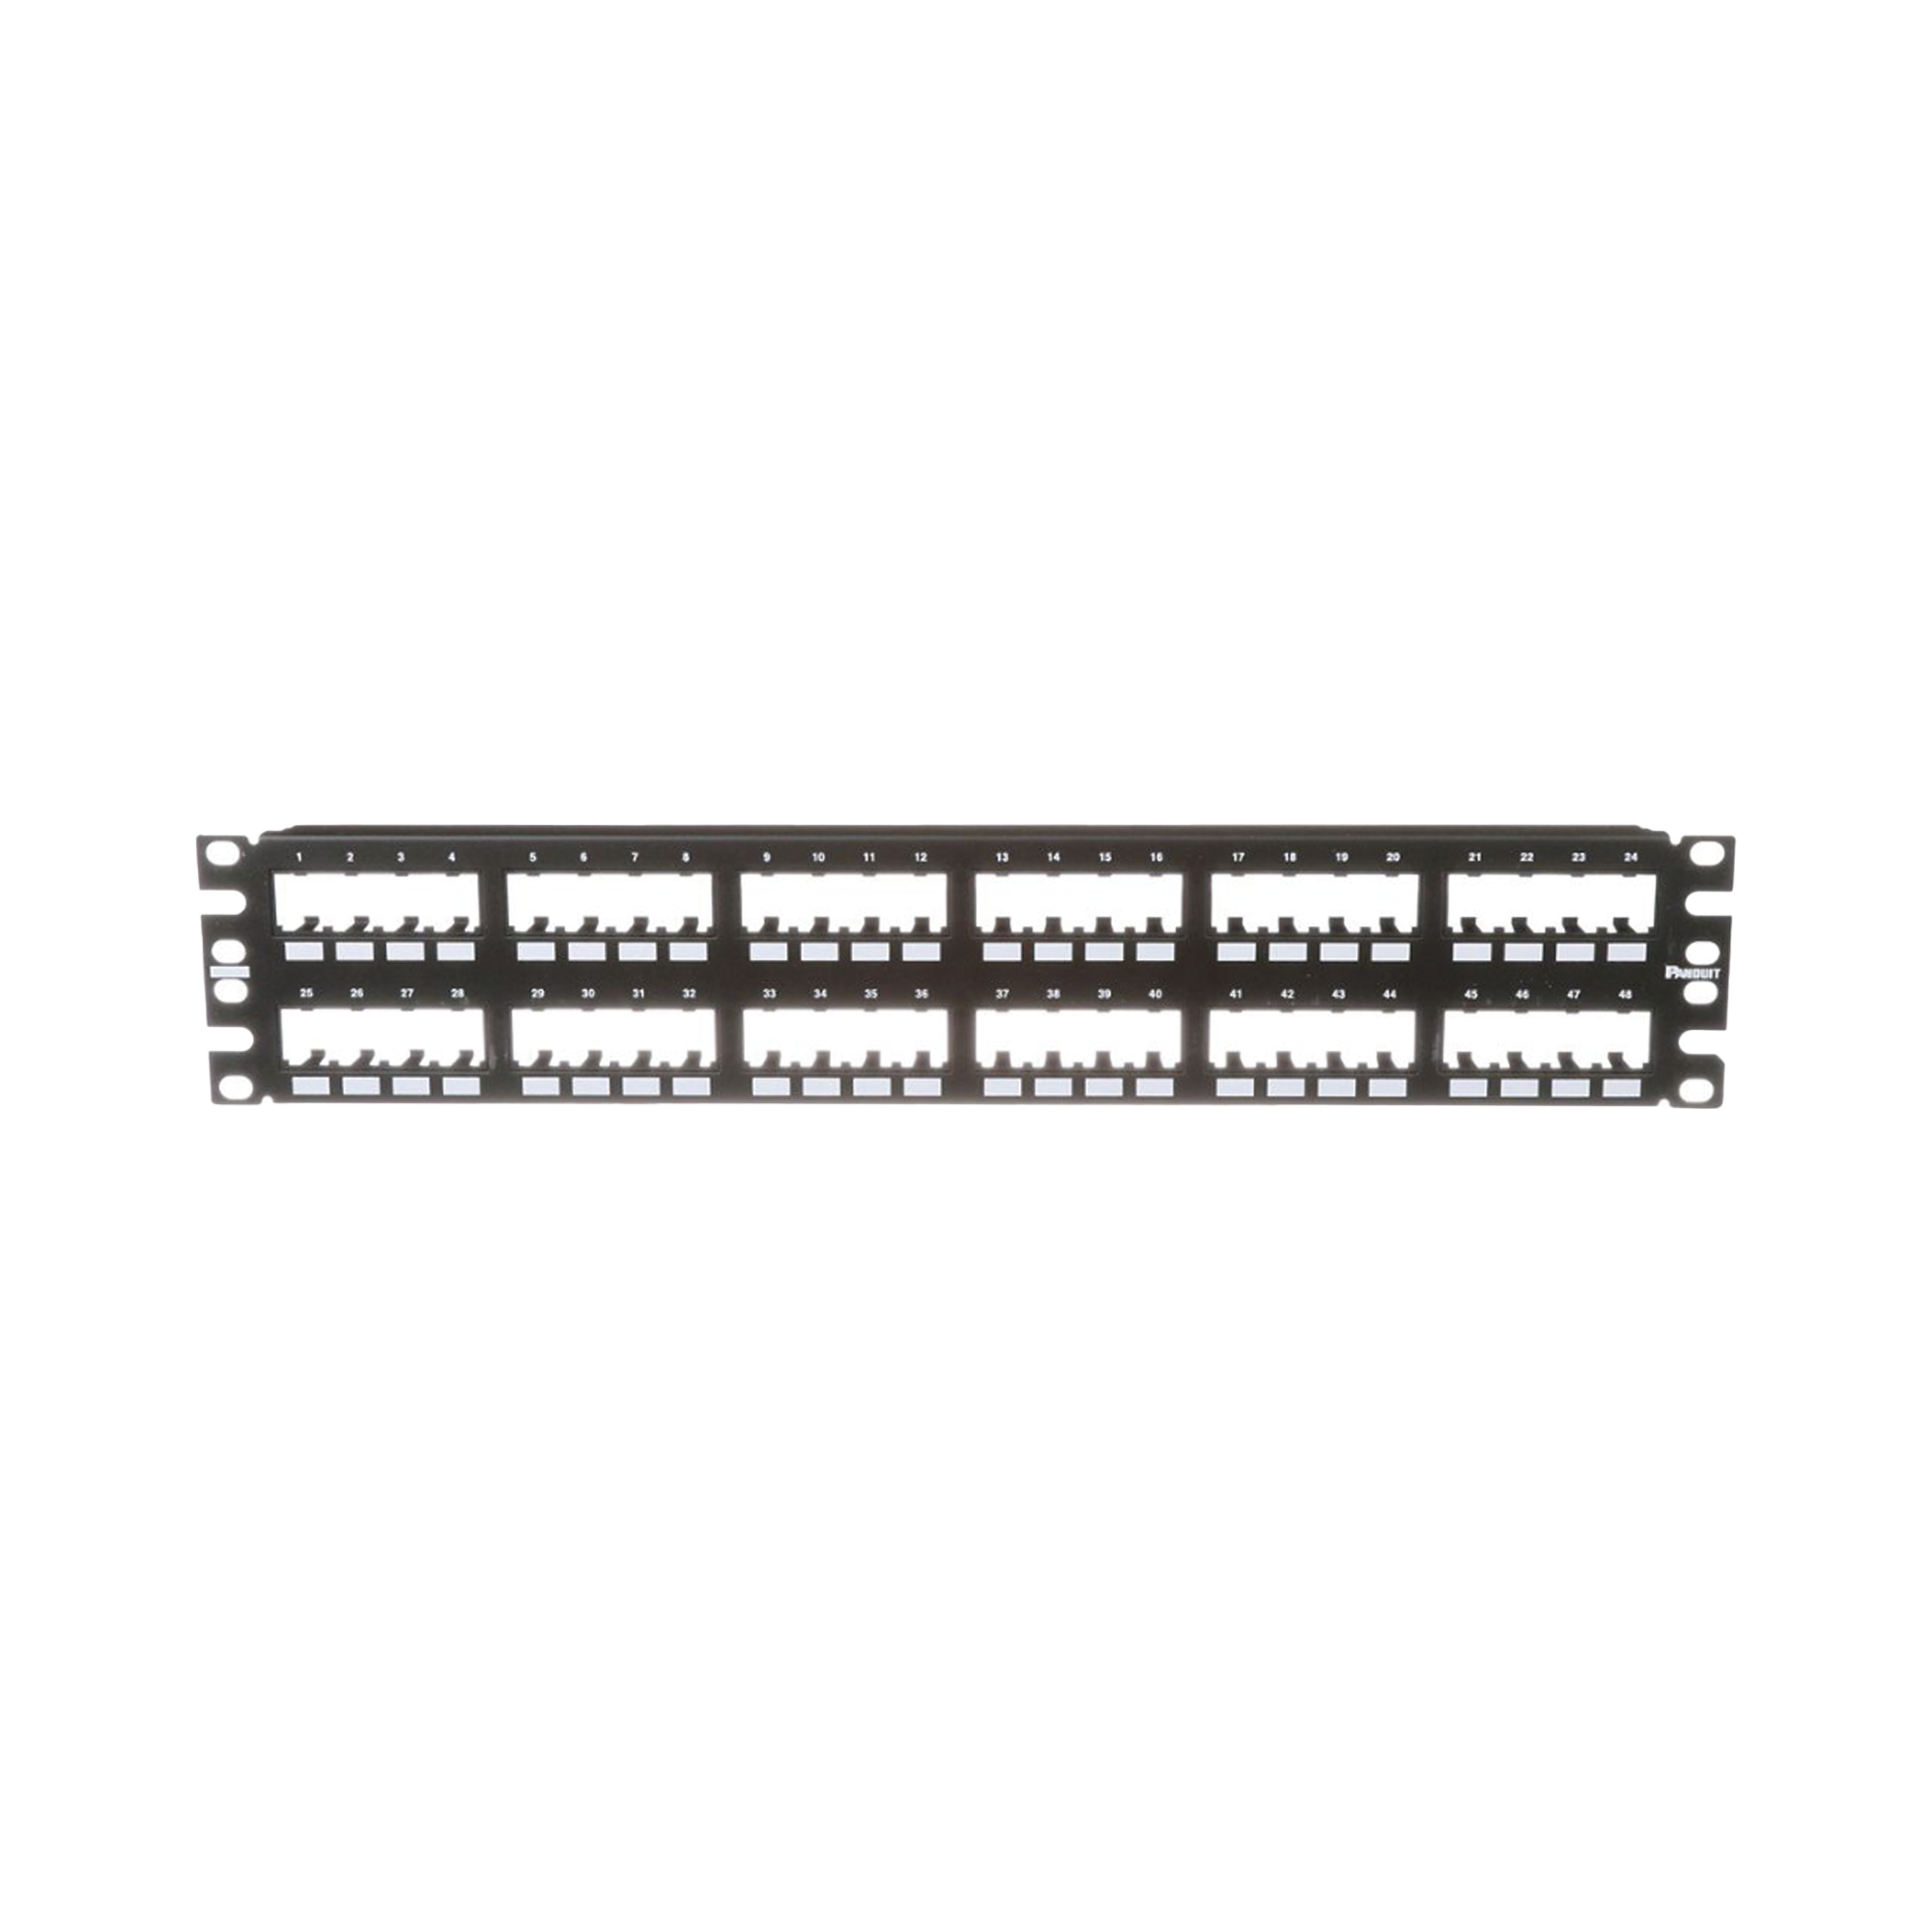 Panel de Parcheo Modular Mini-Com (Sin Conectores), Plano de Instalación al Ras, Sin Blindaje, de 48 puertos, 2UR